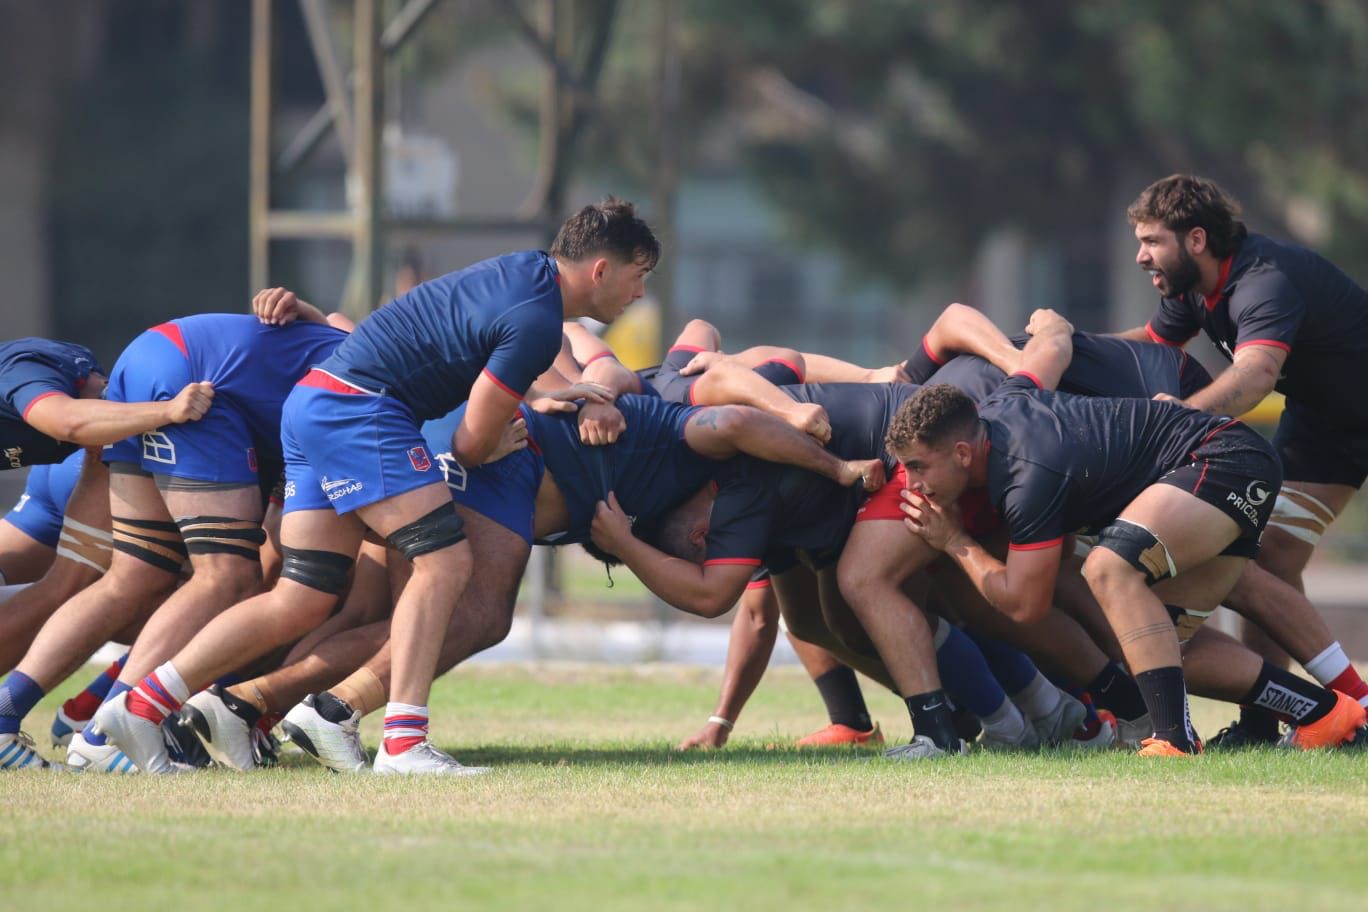 Selknam marca el paso en un año histórico para el Team Chile de Rugby